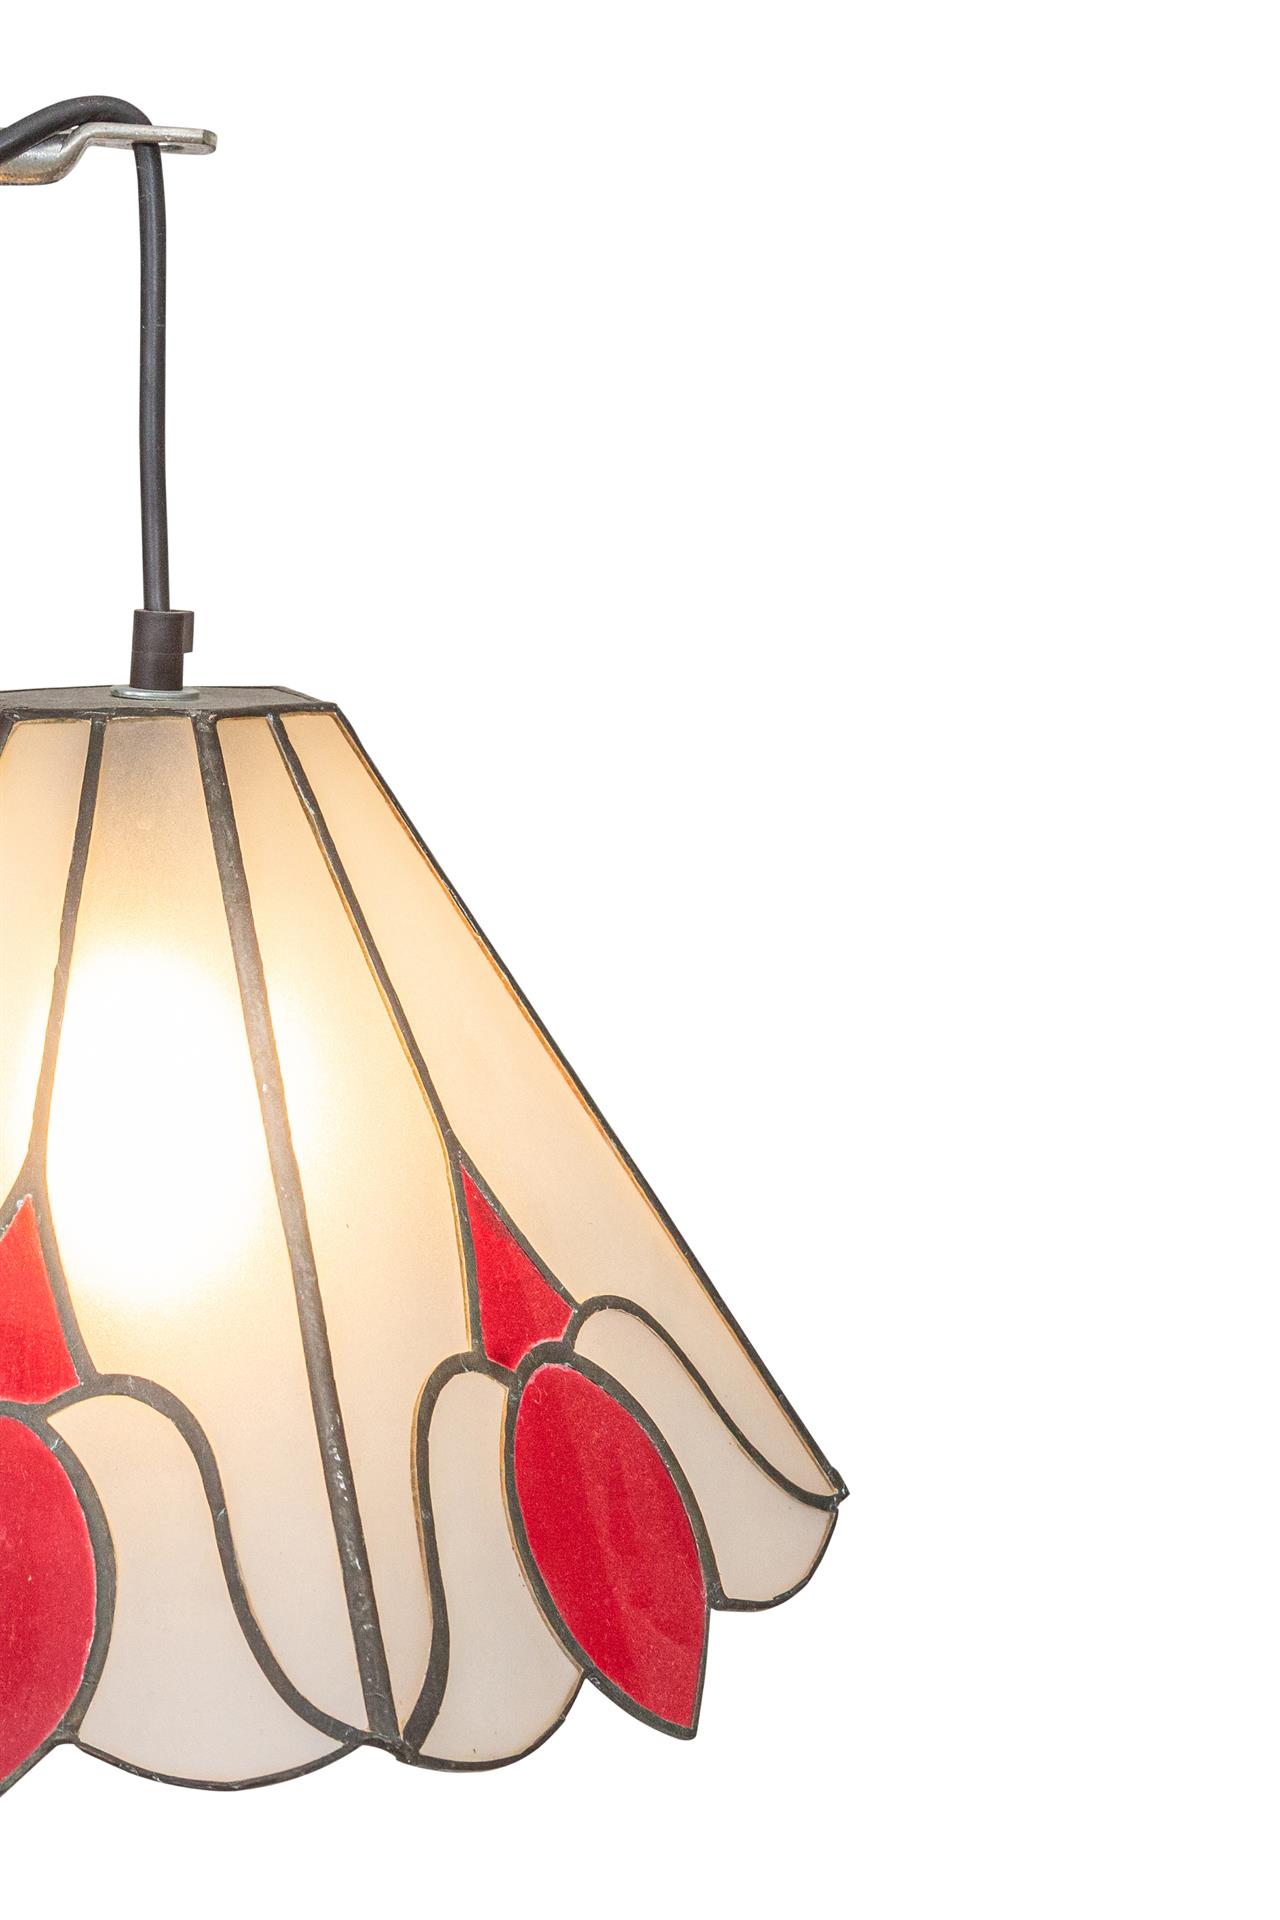 מנורת רצפה – דגם: אדום